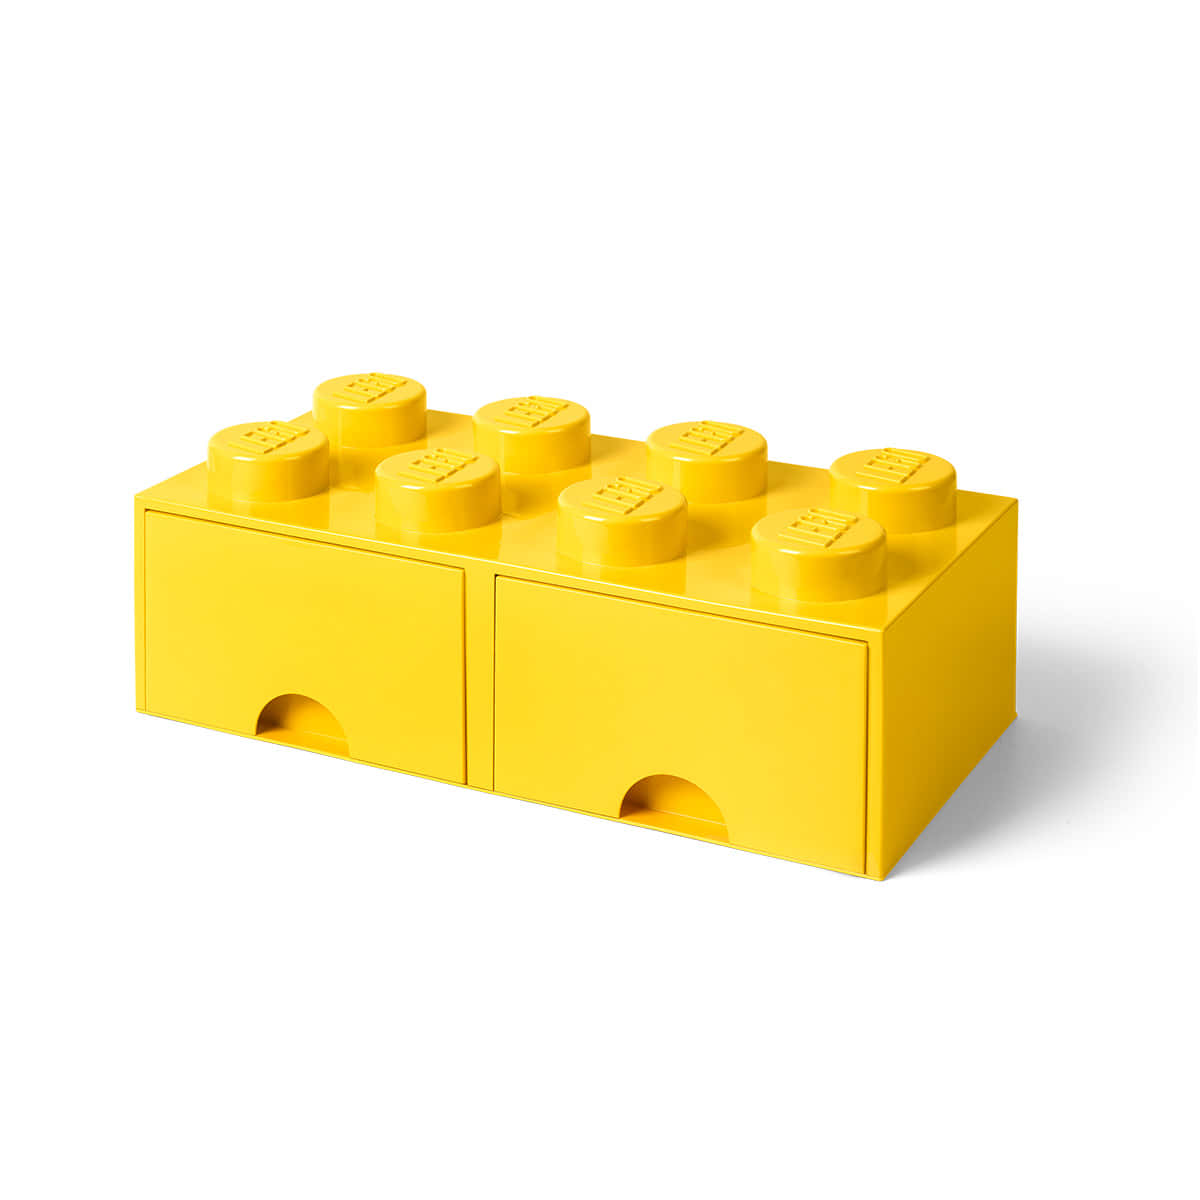 Lego-billeder bringer glæde til skrivebordsmiljøer.